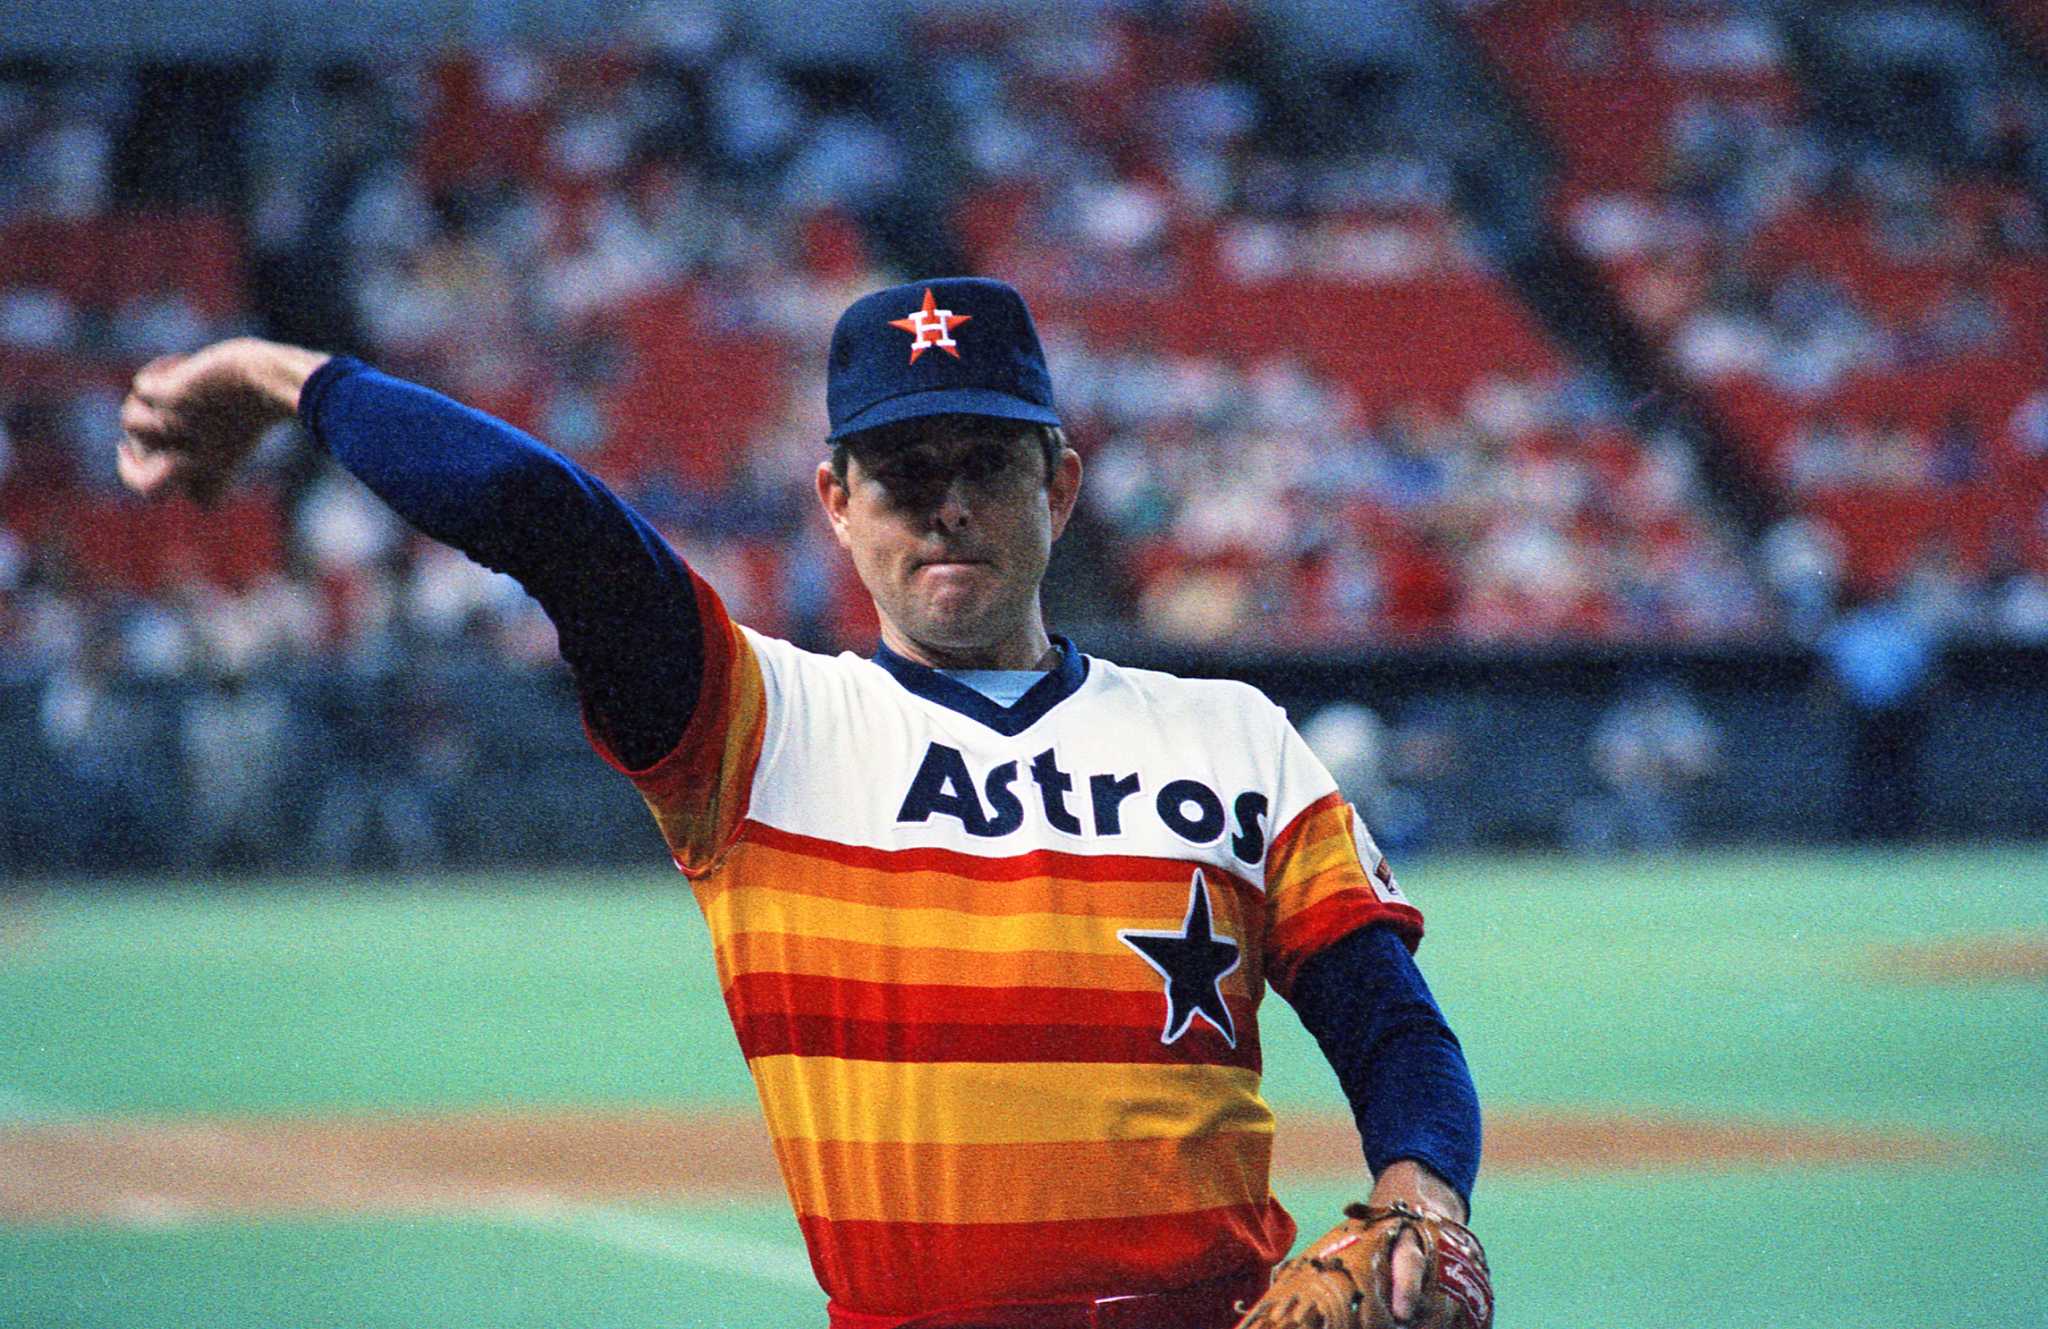 astros baseball uniforms